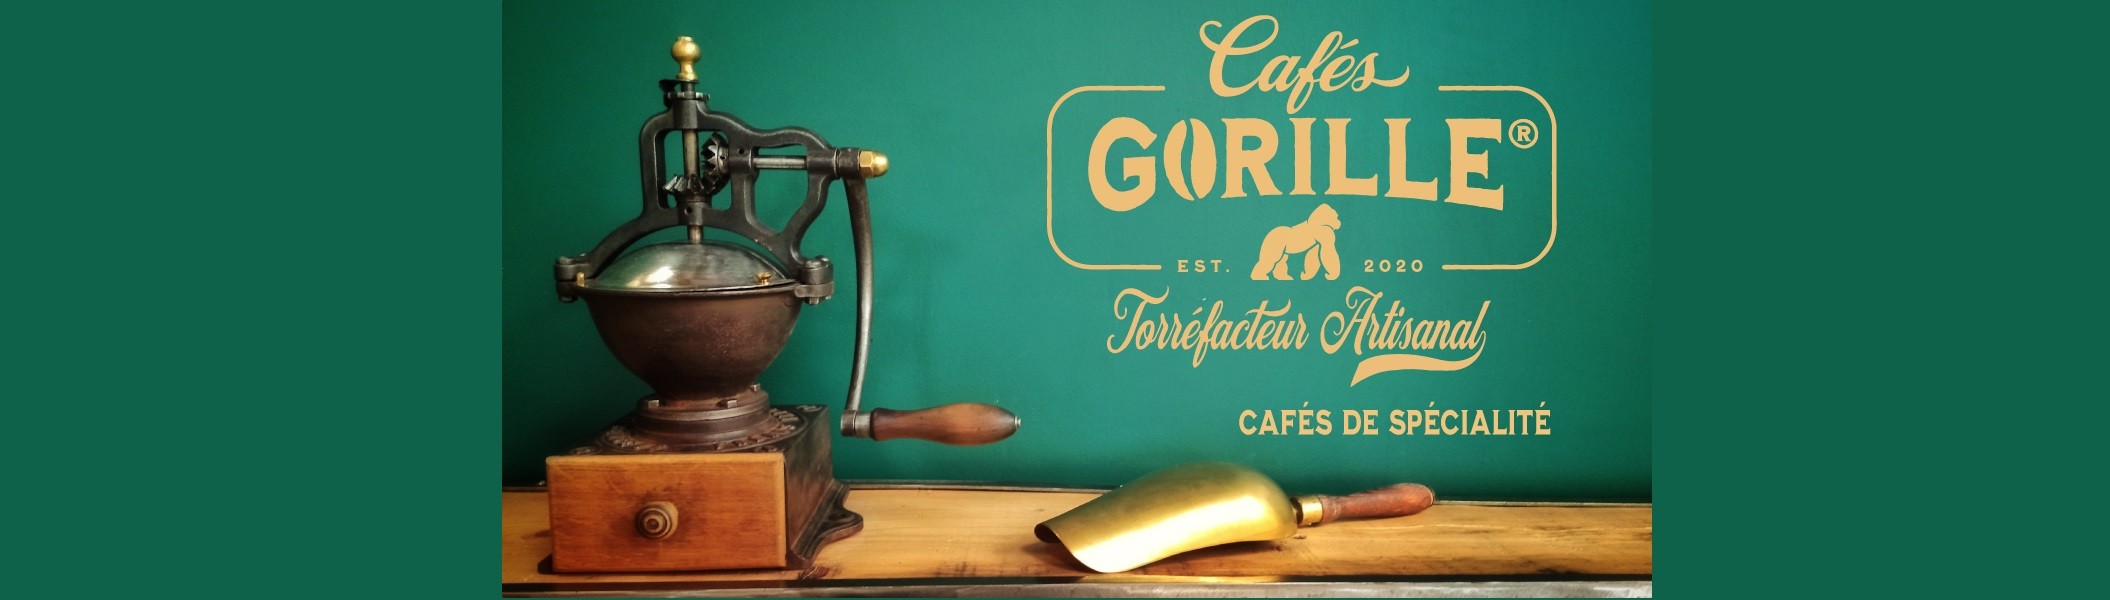 Accueil Cafés Gorille